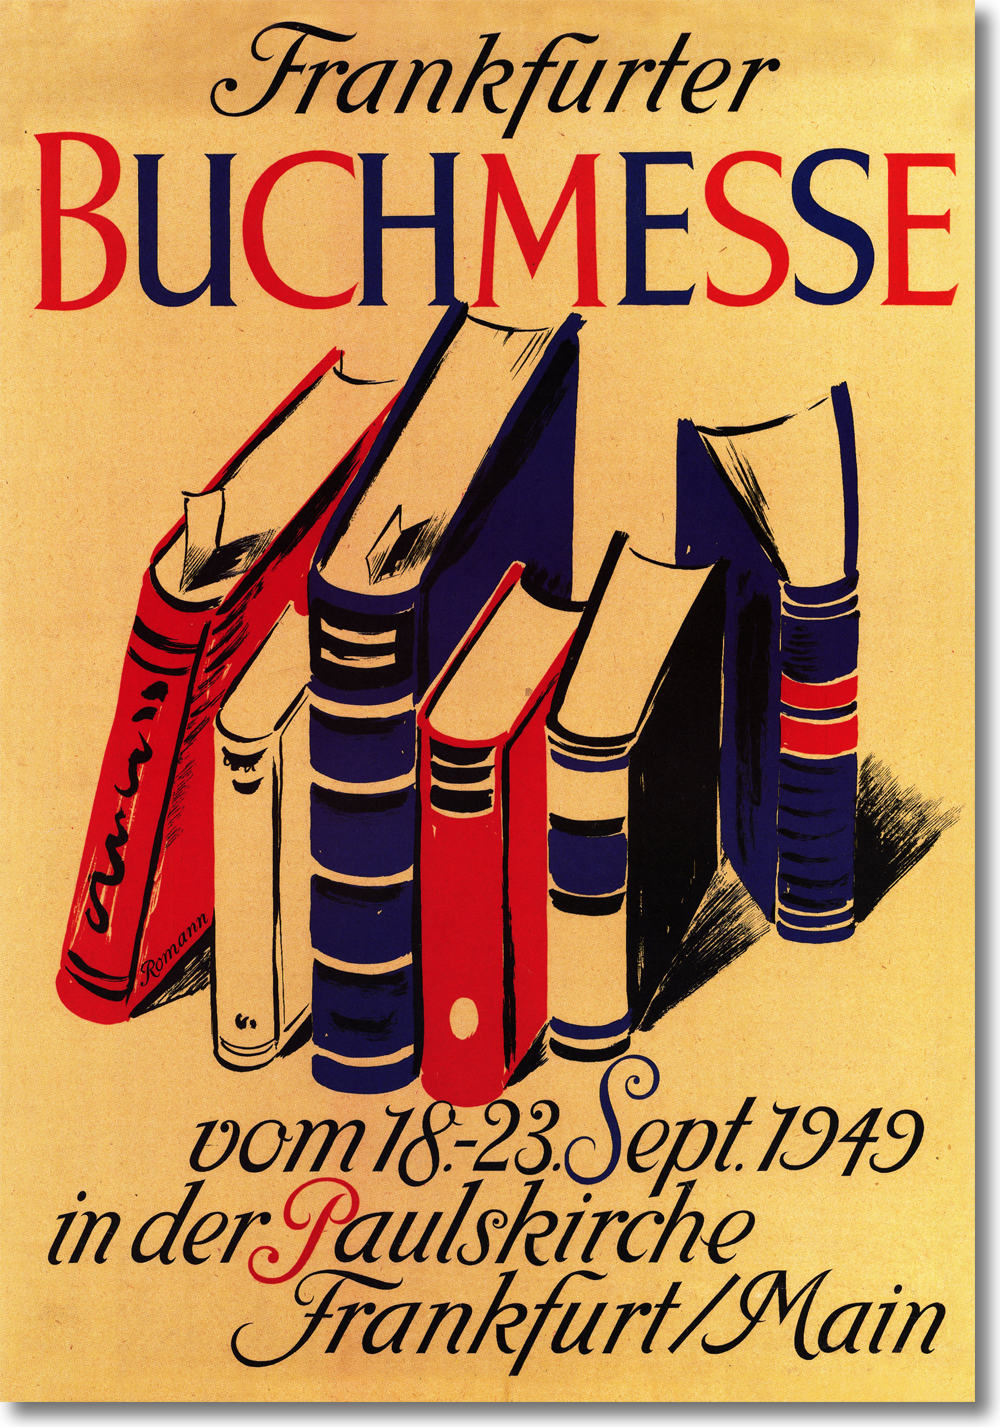 Historisches Plakat aus dem Jahre 1949. Vor 74 Jahren fand die Frankfurter Buchmesse zum ersten Mal statt.